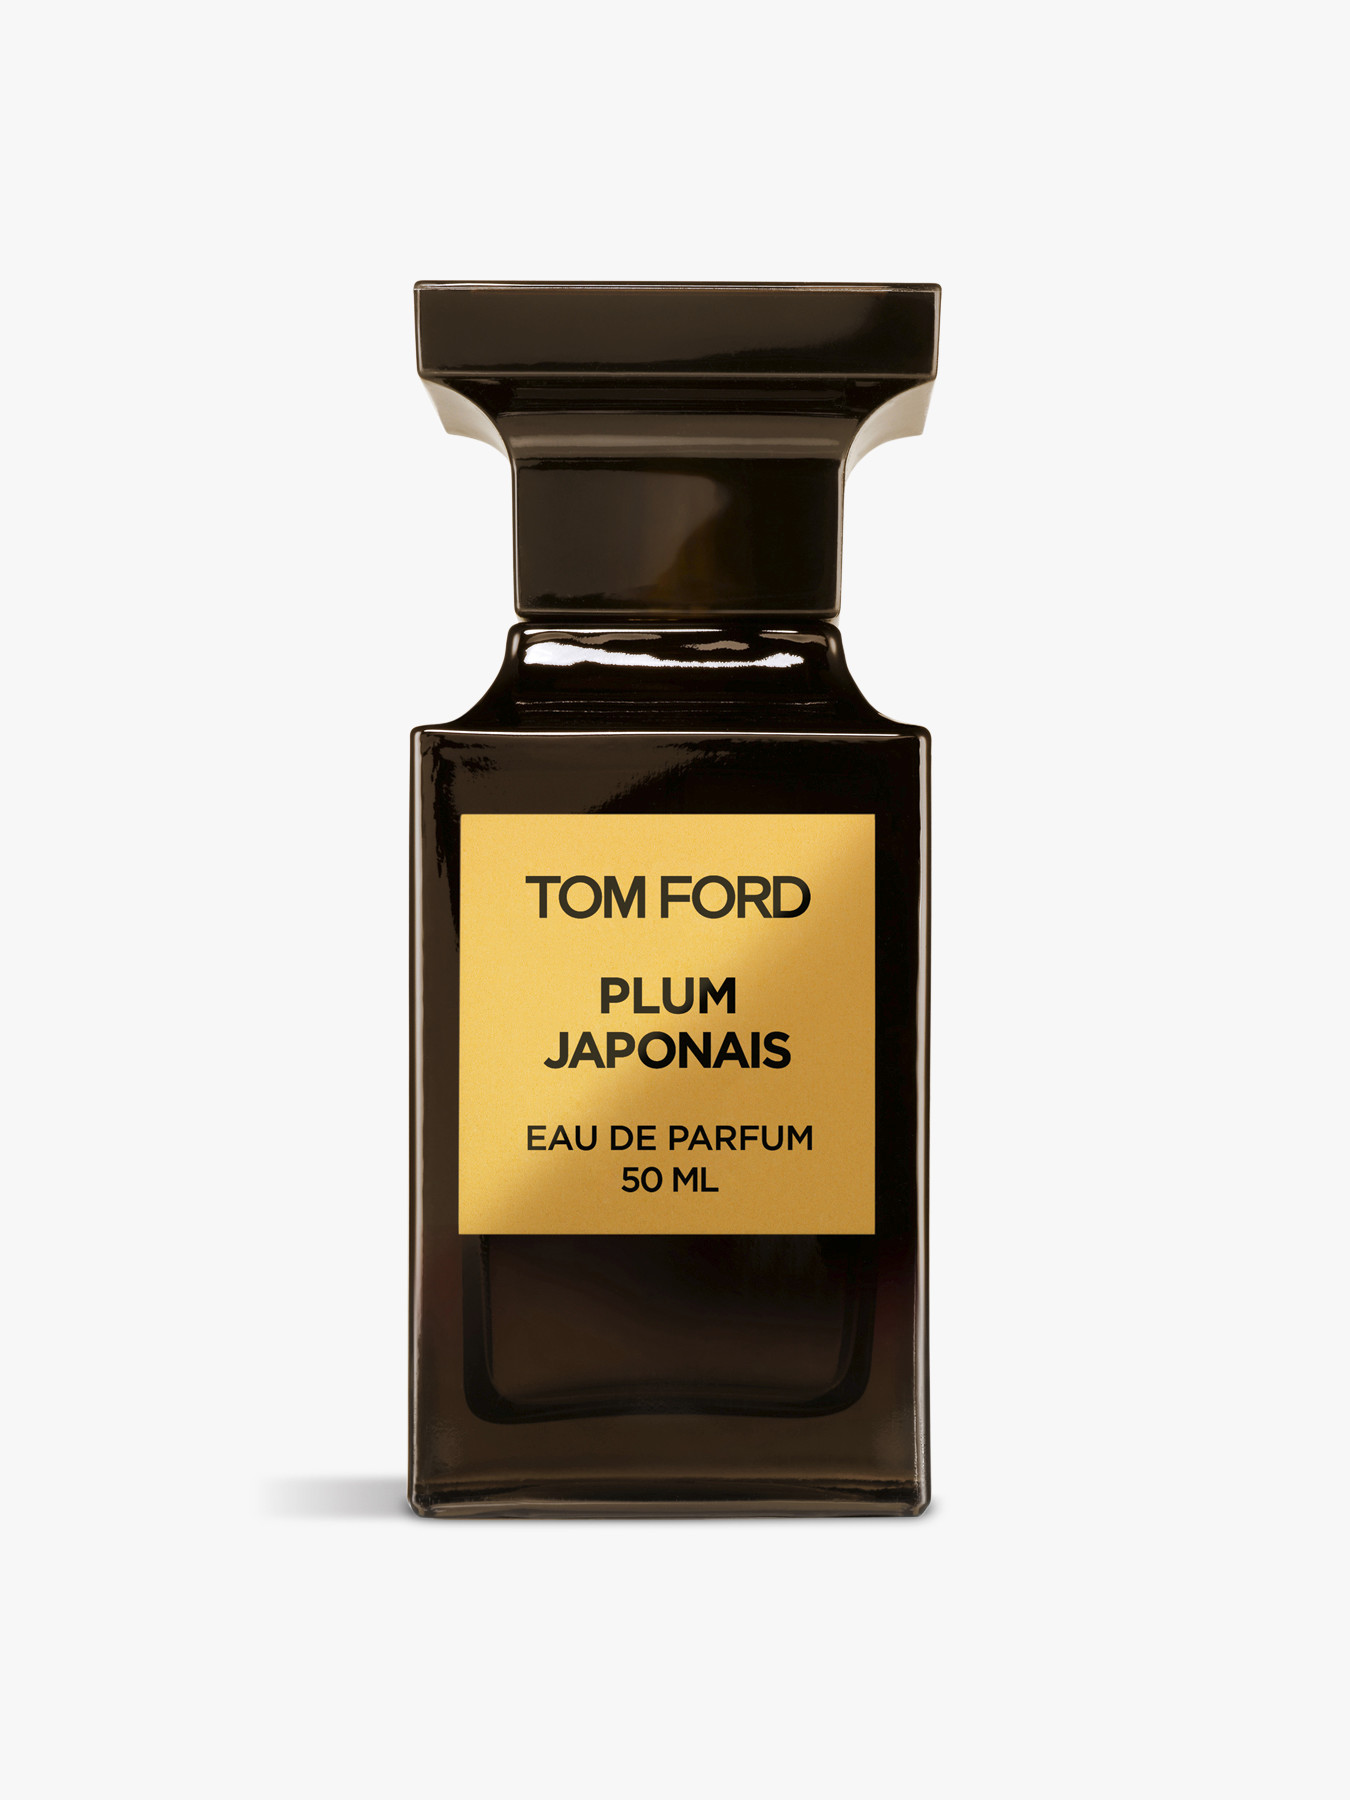 Tom Ford Plum Japonais Eau de Parfum 50 ml | Men's Fragrances | Fenwick